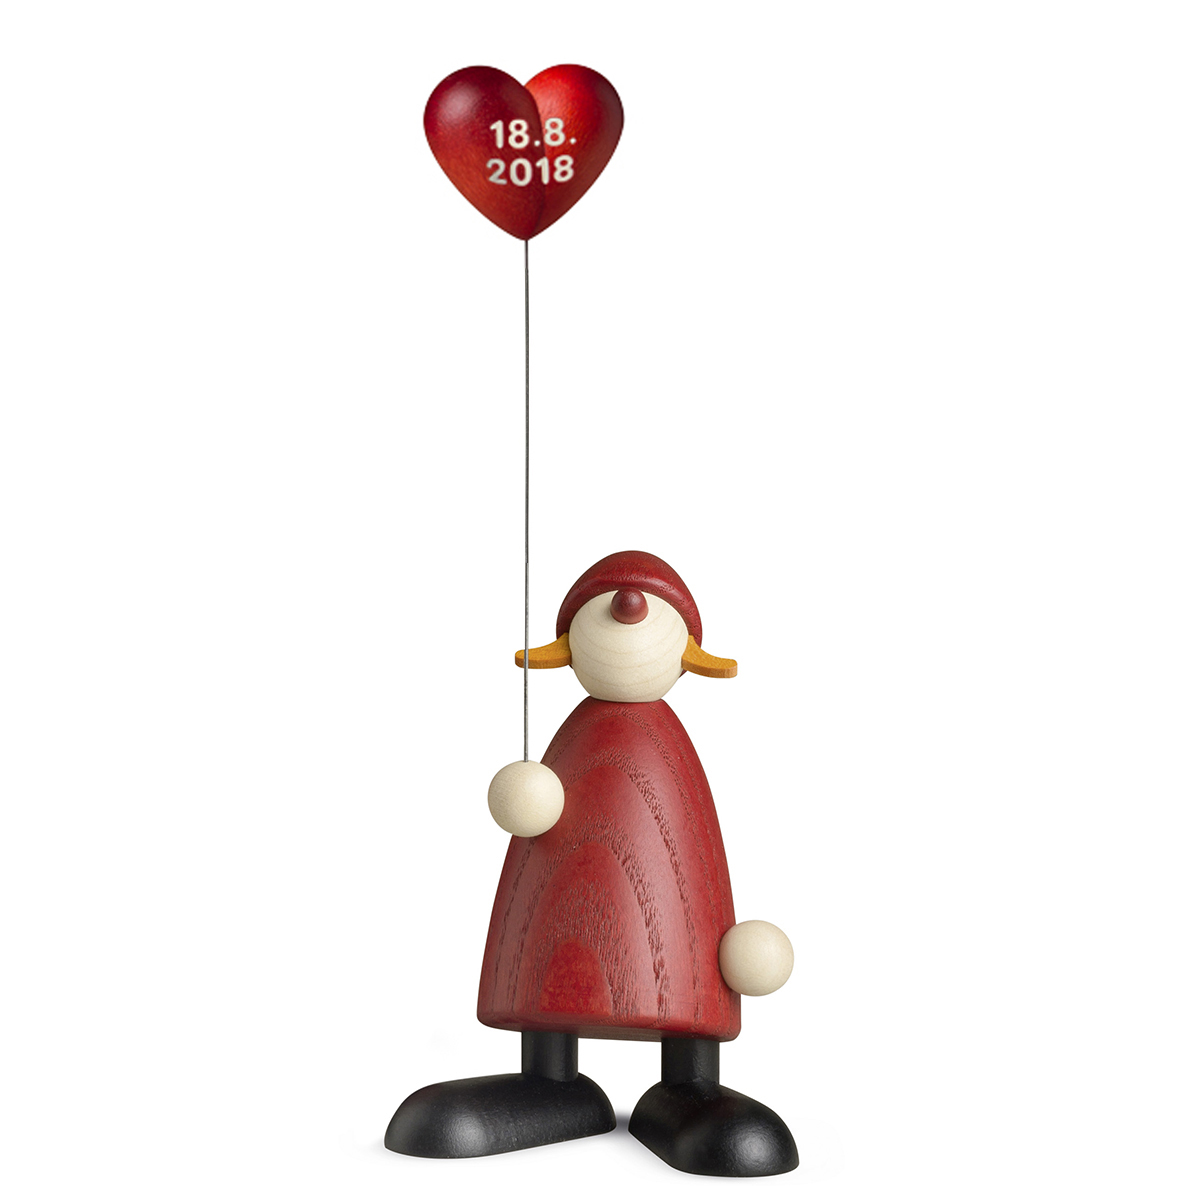 Weihnachtsfrau mit Herzballon, klein, personalisiert